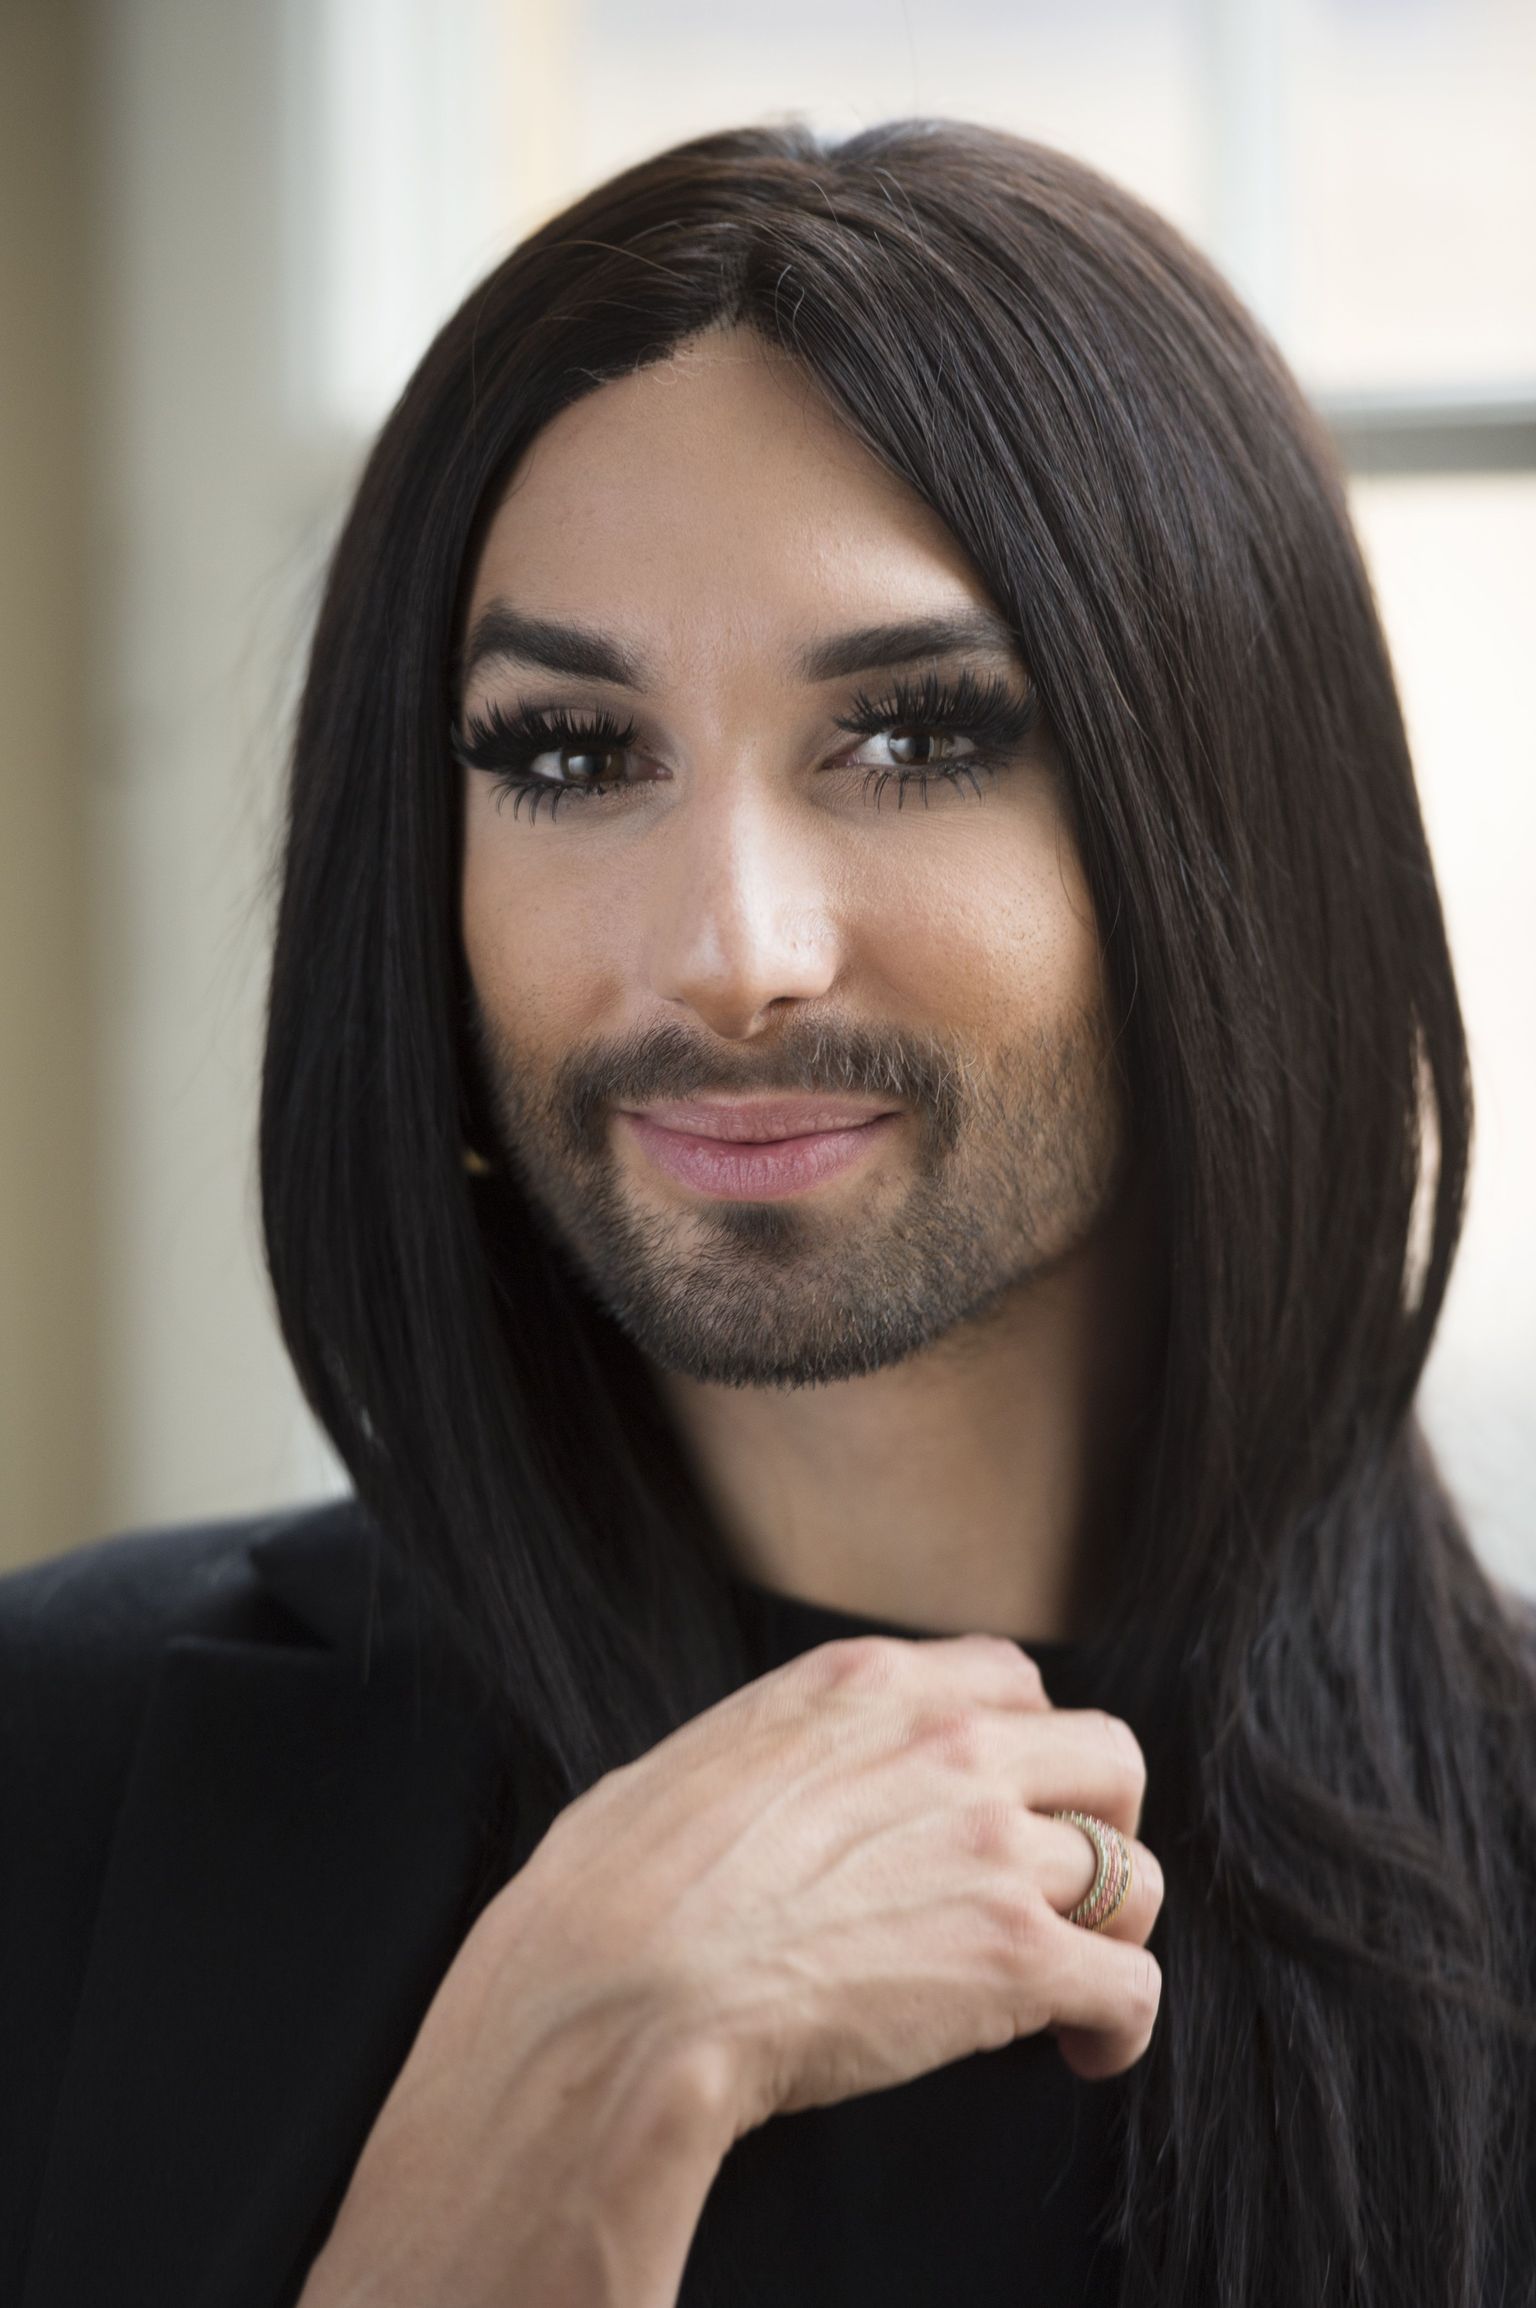 Conchita Wurst on saanud transseksuaalsete inimeste sümboliks.